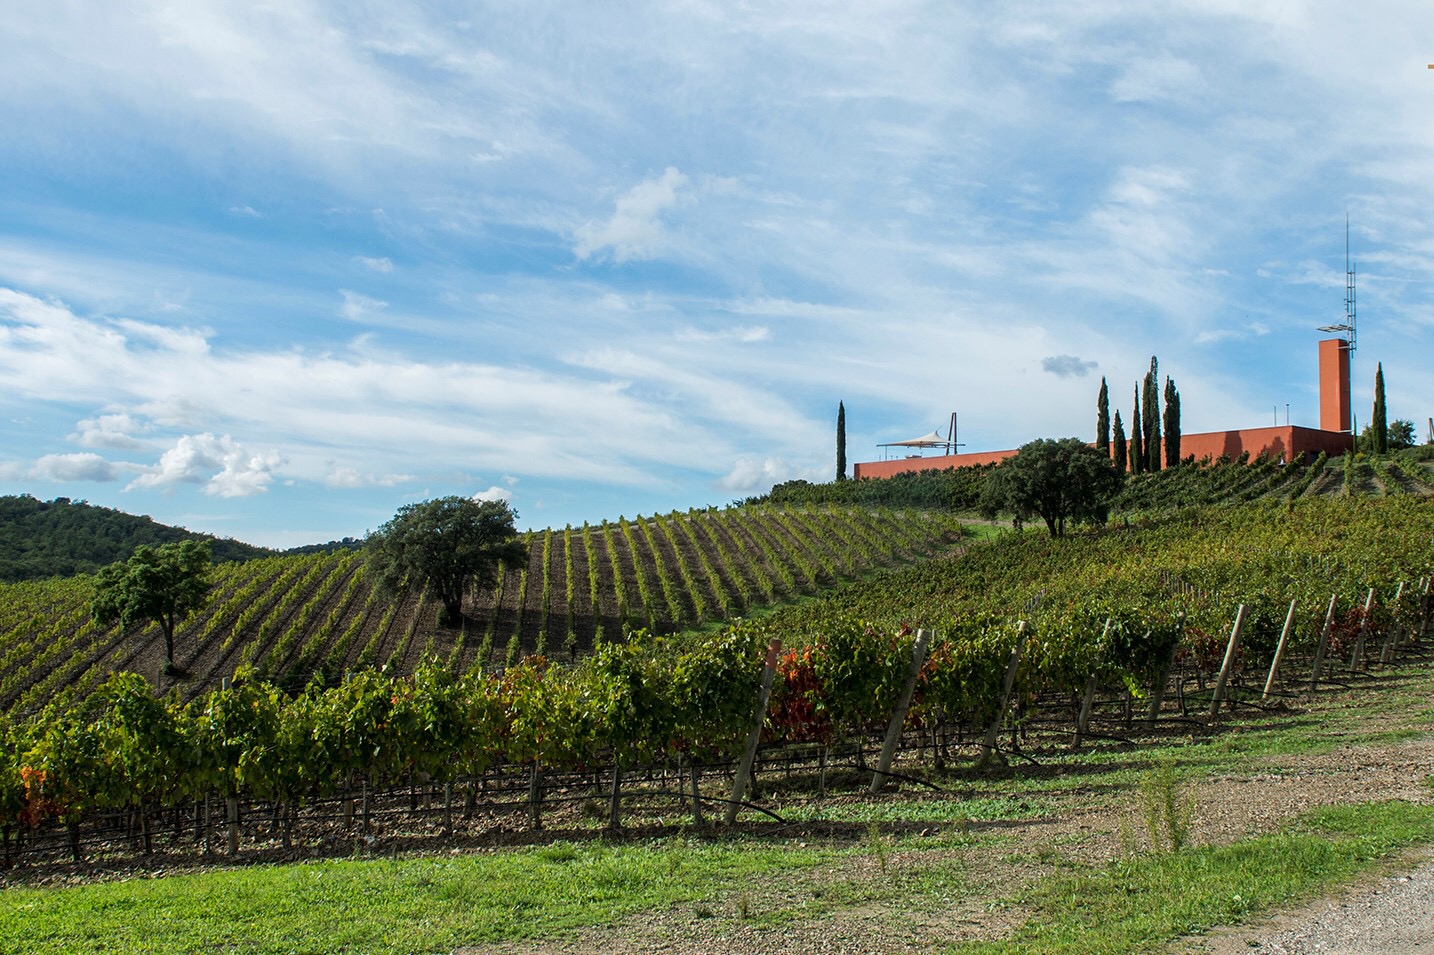 Vinitaly 2018, la manifestazione dedicata al mondo vitivinicolo mondiale più importante di Italia, è giunta quest'anno alla sua 52° edizione.